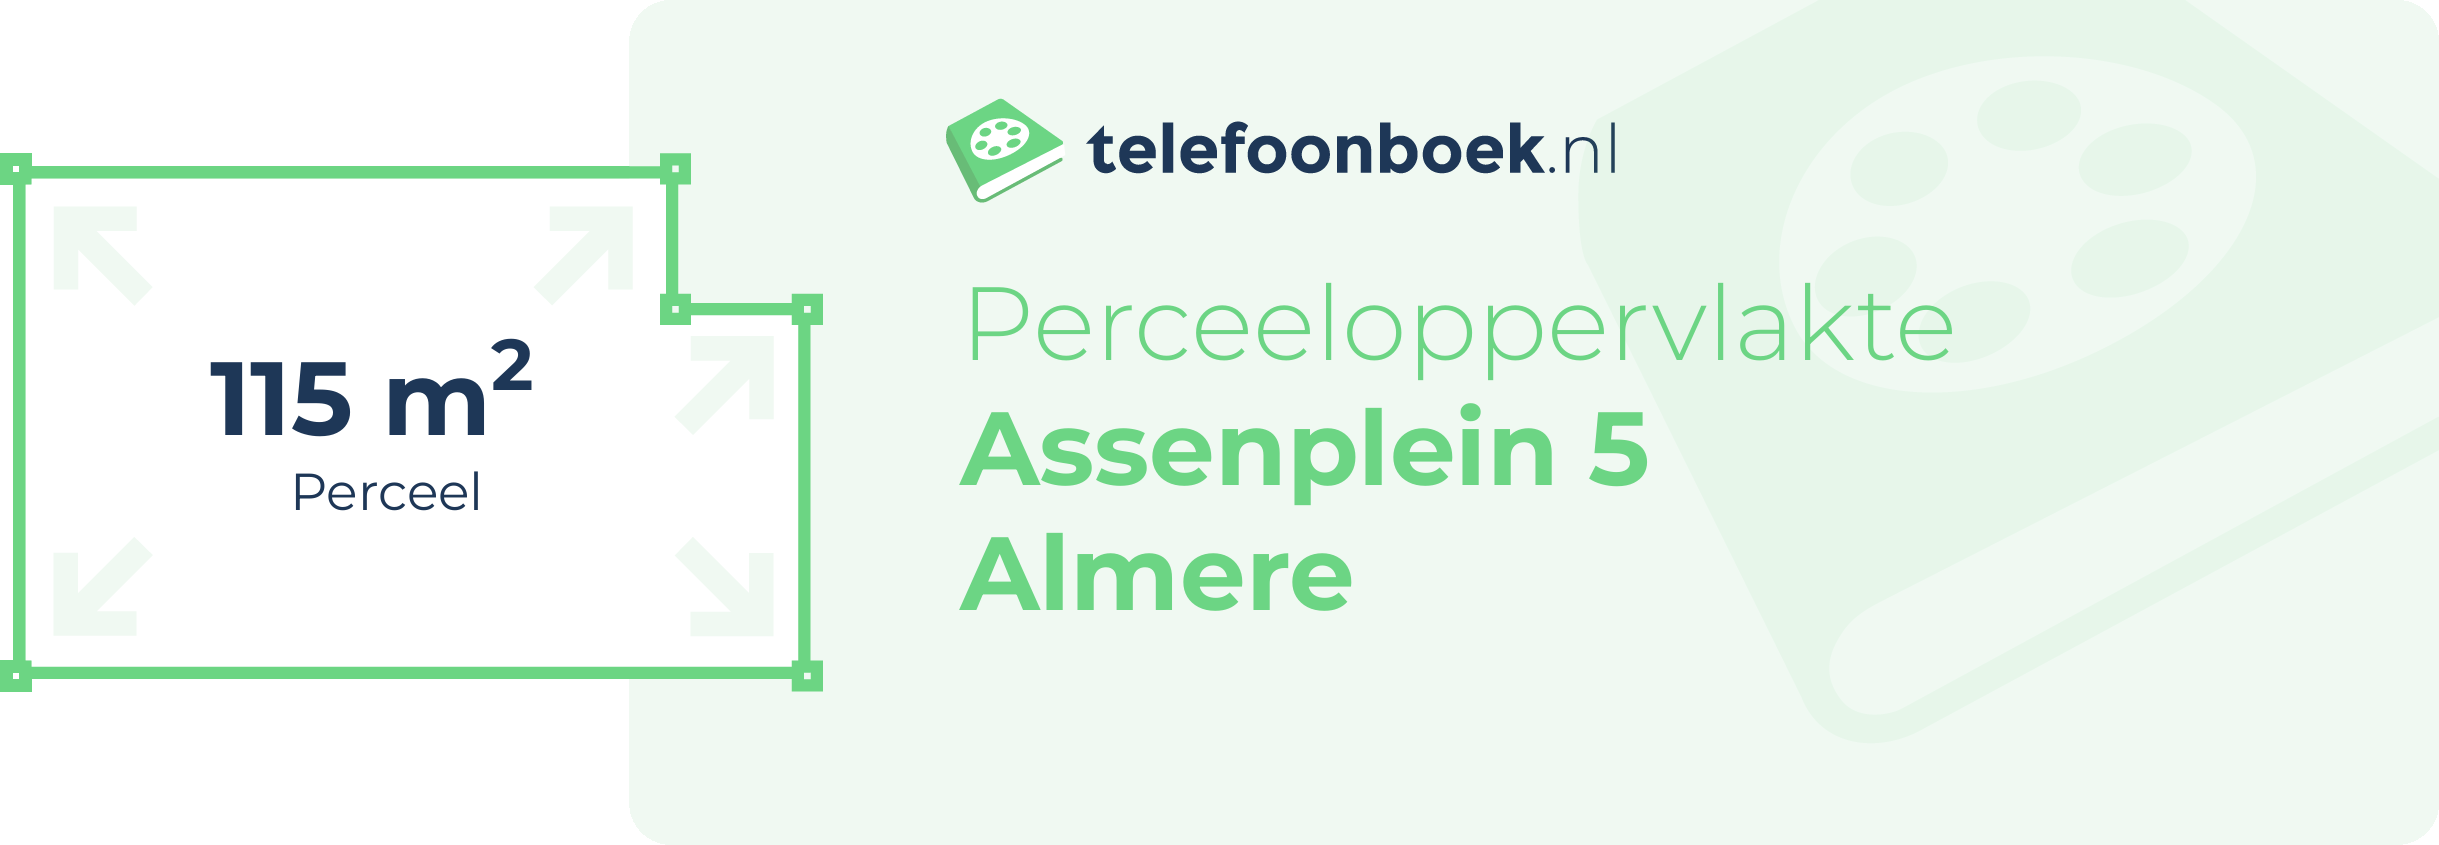 Perceeloppervlakte Assenplein 5 Almere